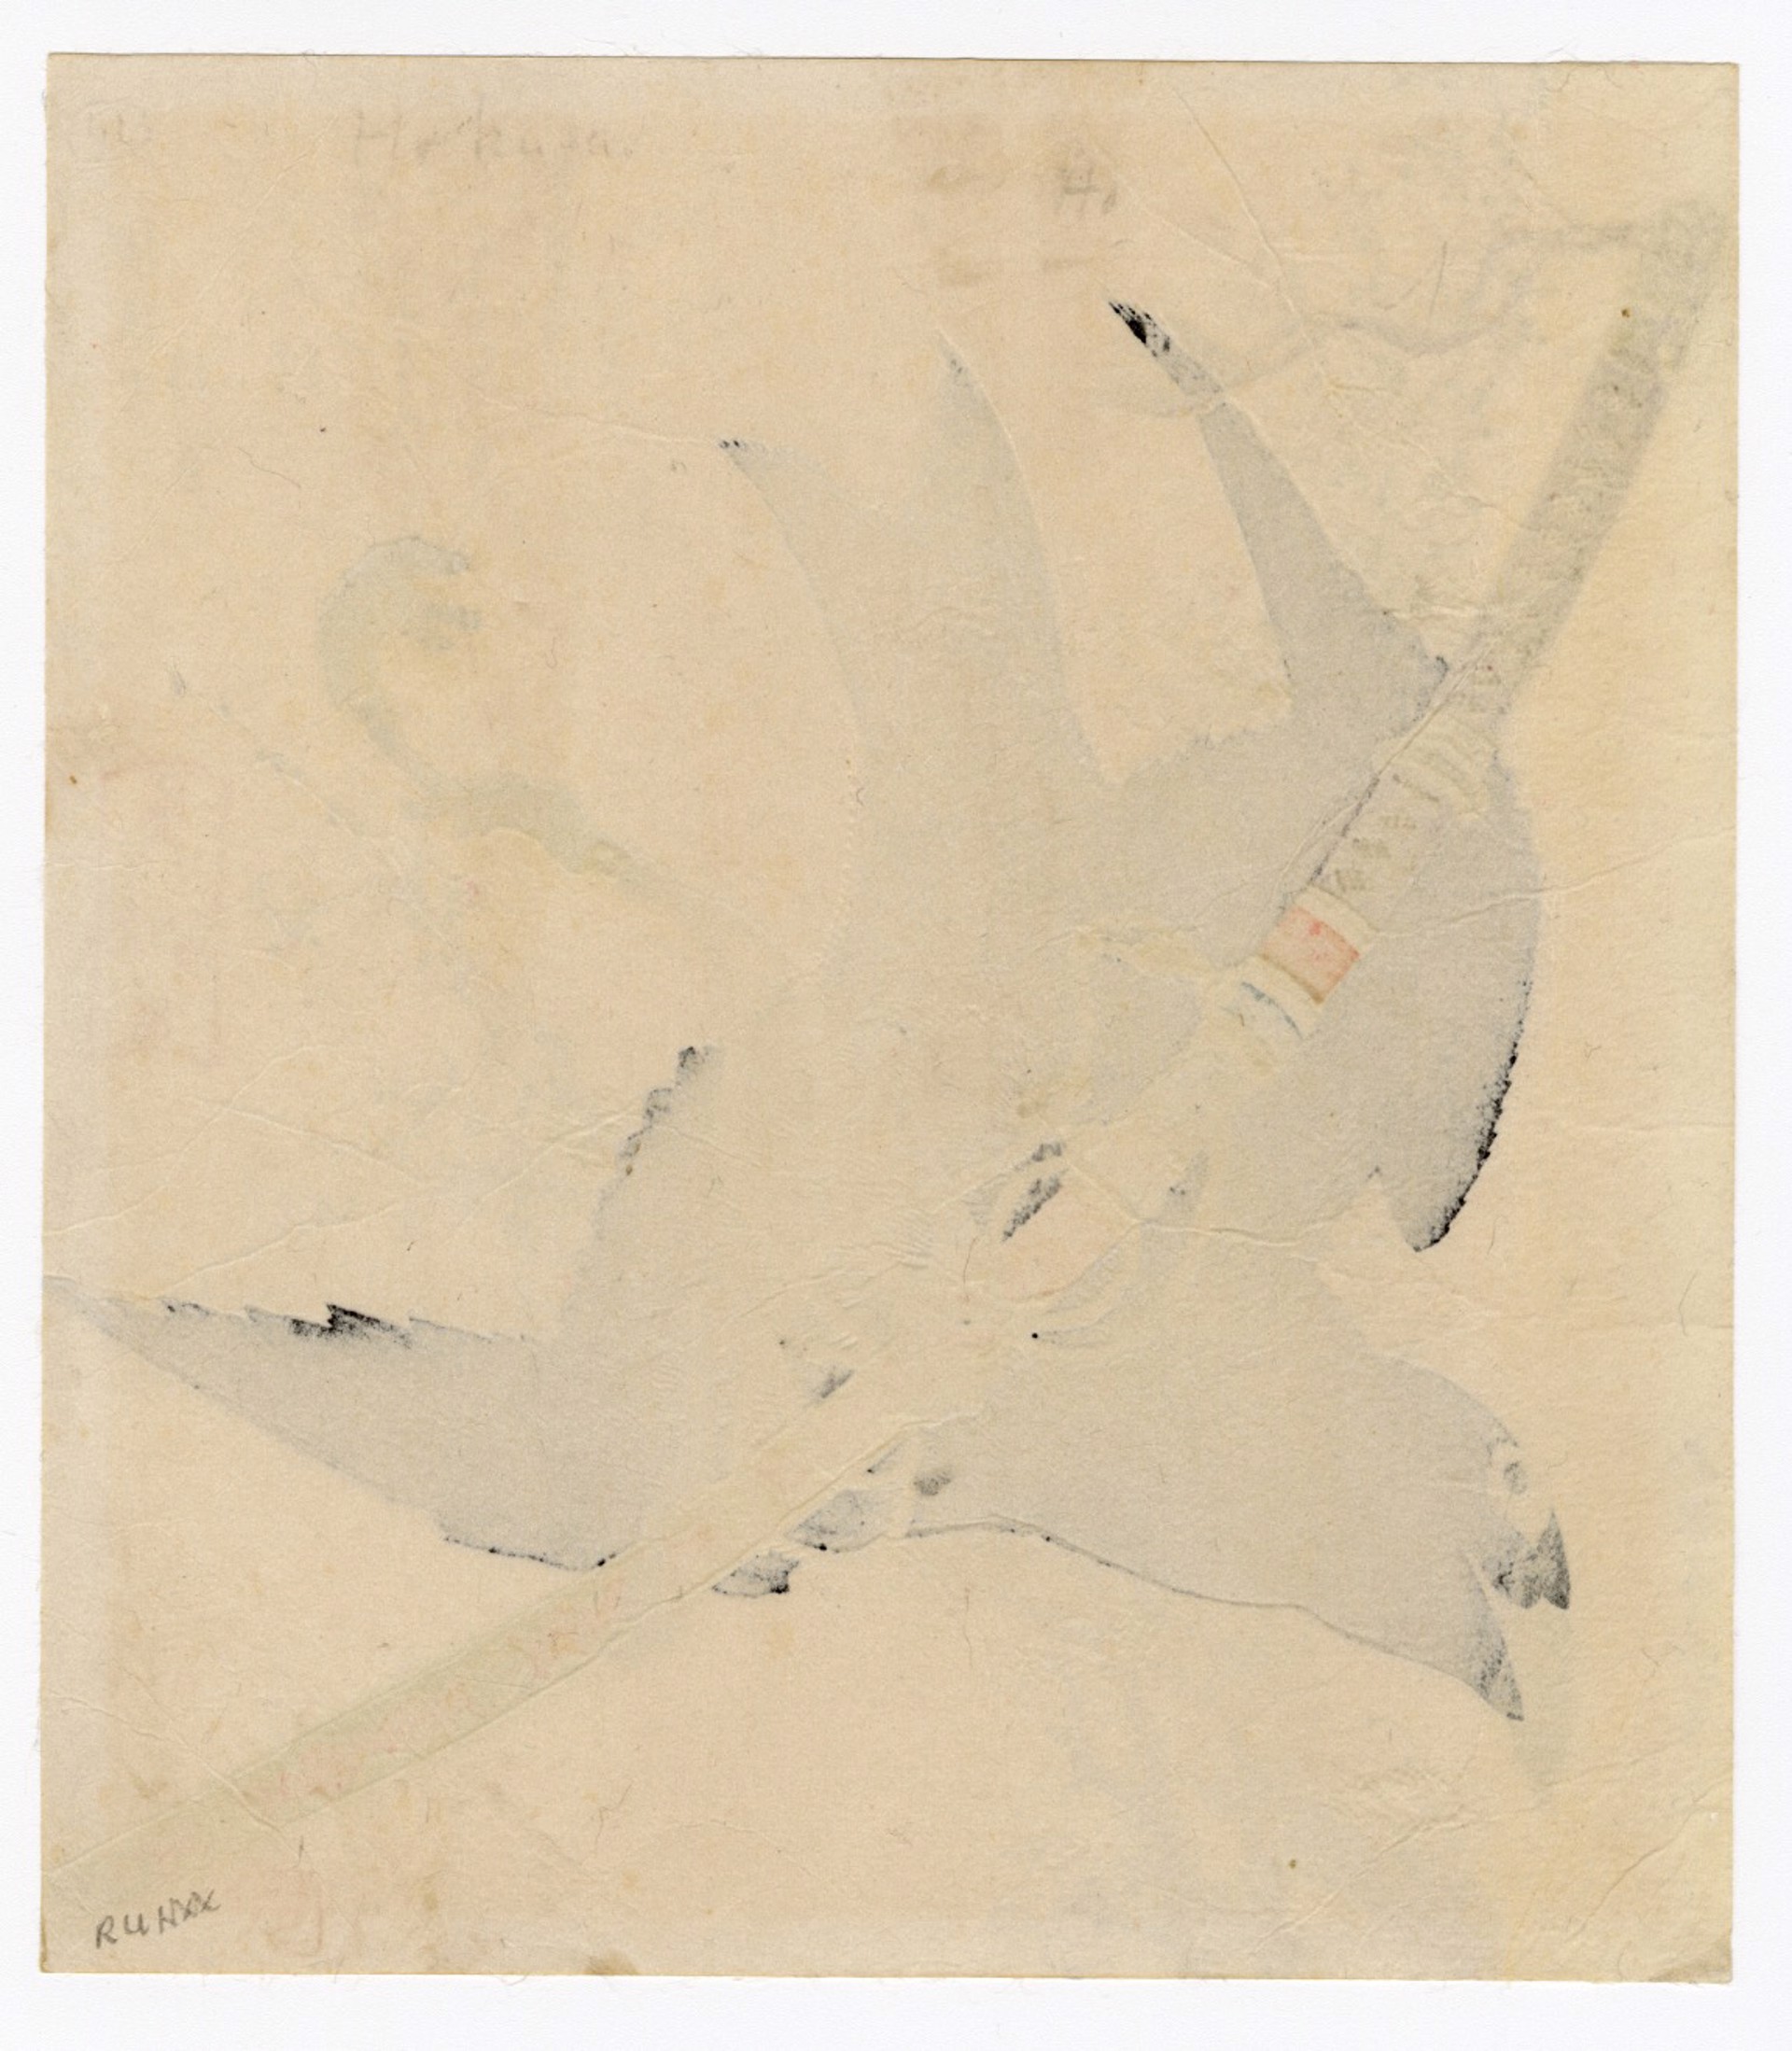 "Little Crow", Sword of Minamoto (Minamoto: Kokarasumaru no Hitokishi ) by Hokusai